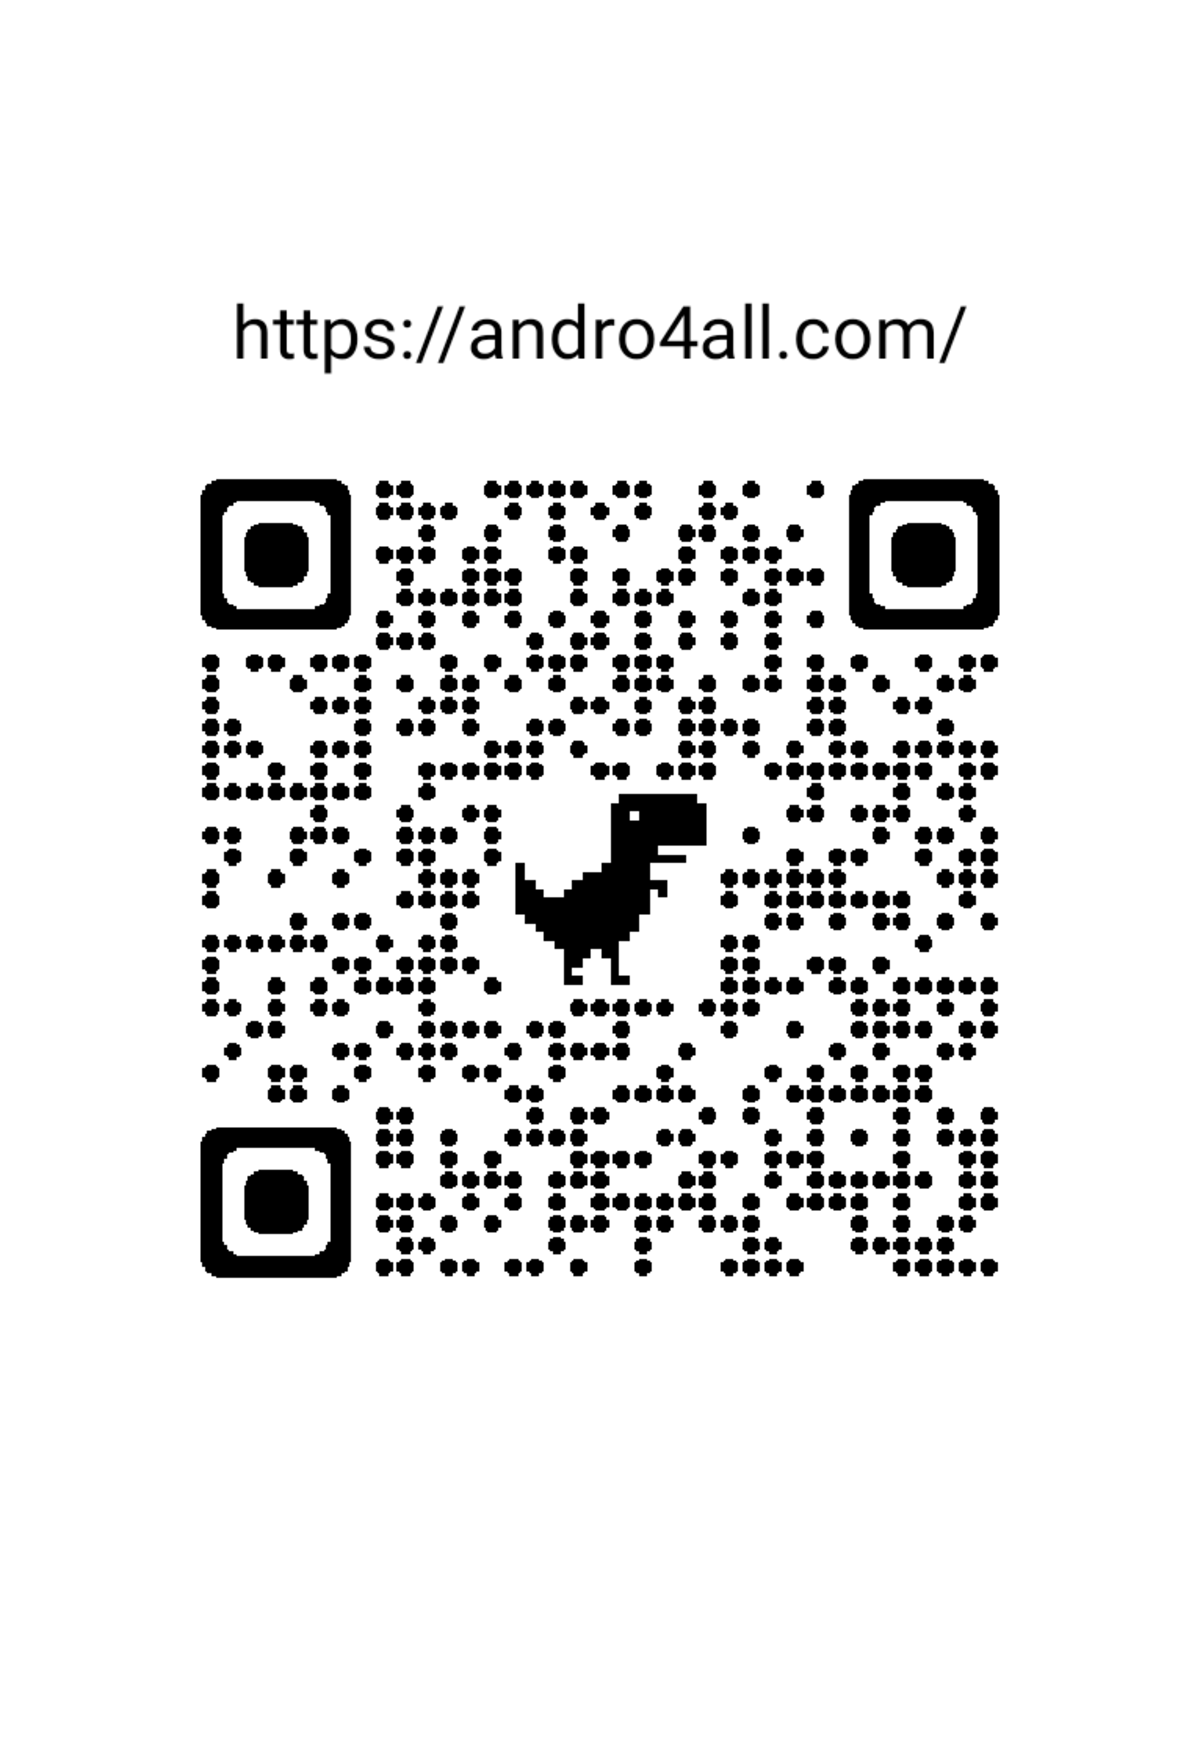 Este es el código QR personalizado de Andro4all